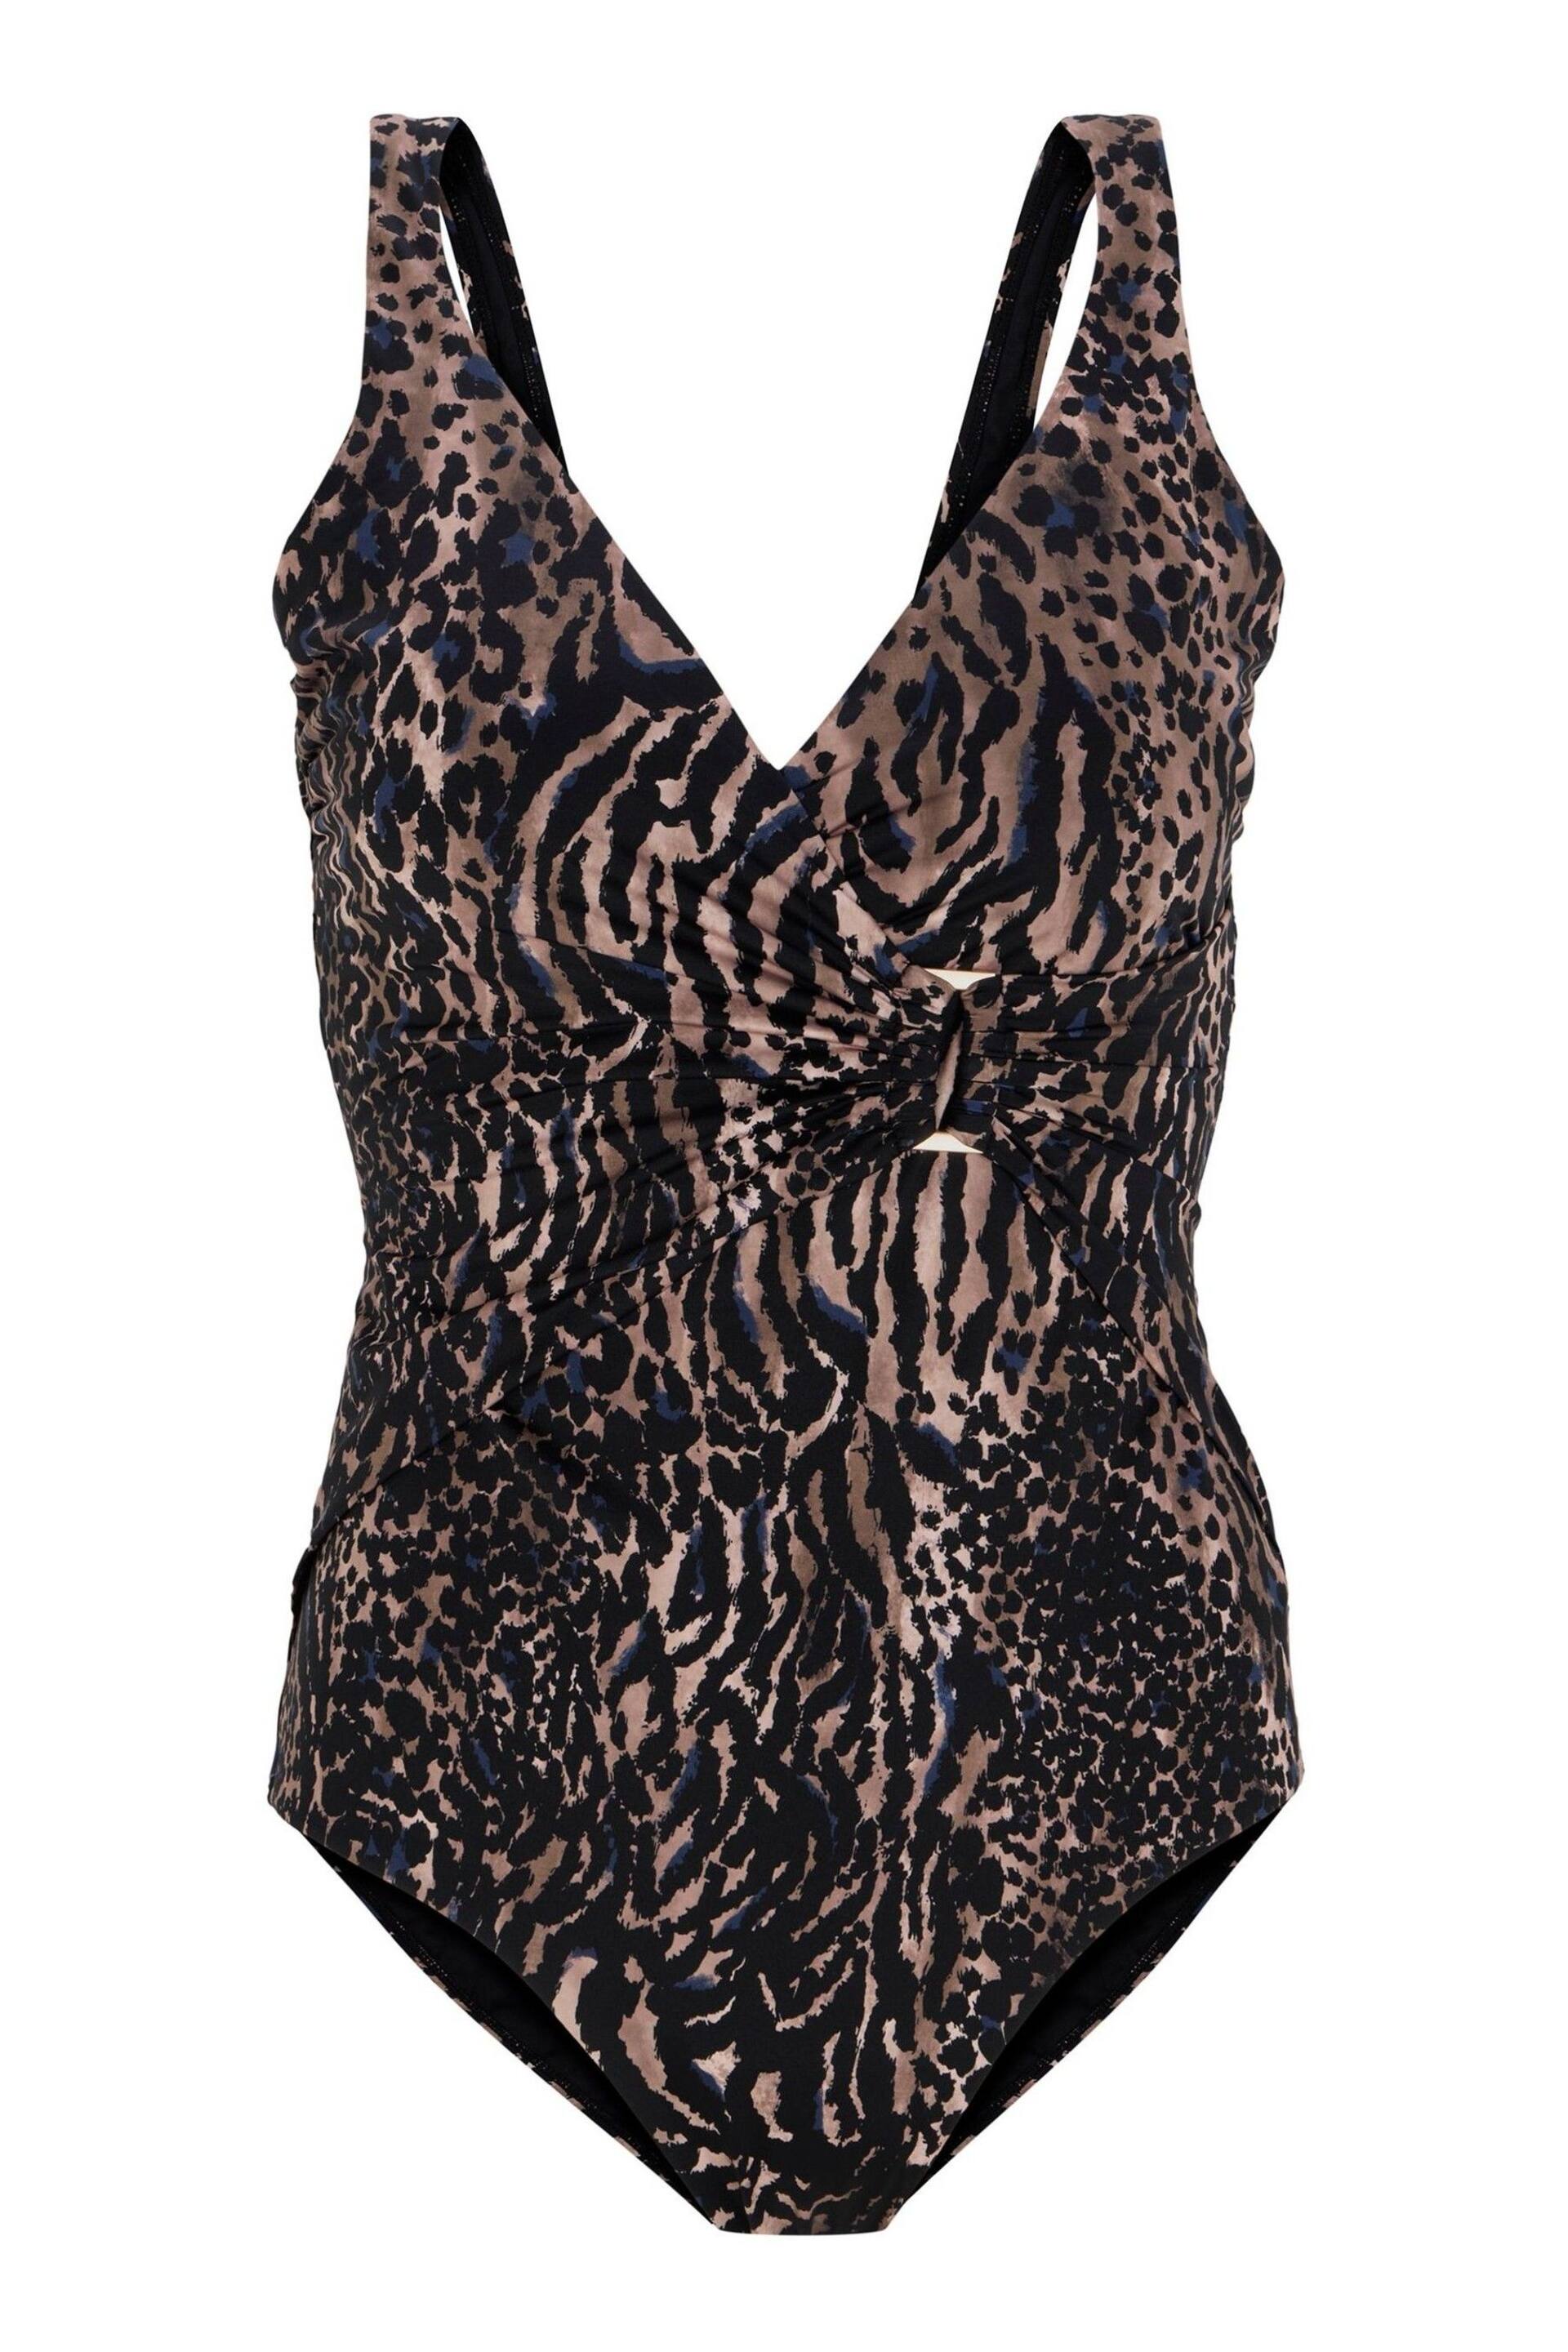 Mint Velvet Leopard Plunge Hardware Swimsuit - Image 4 of 5